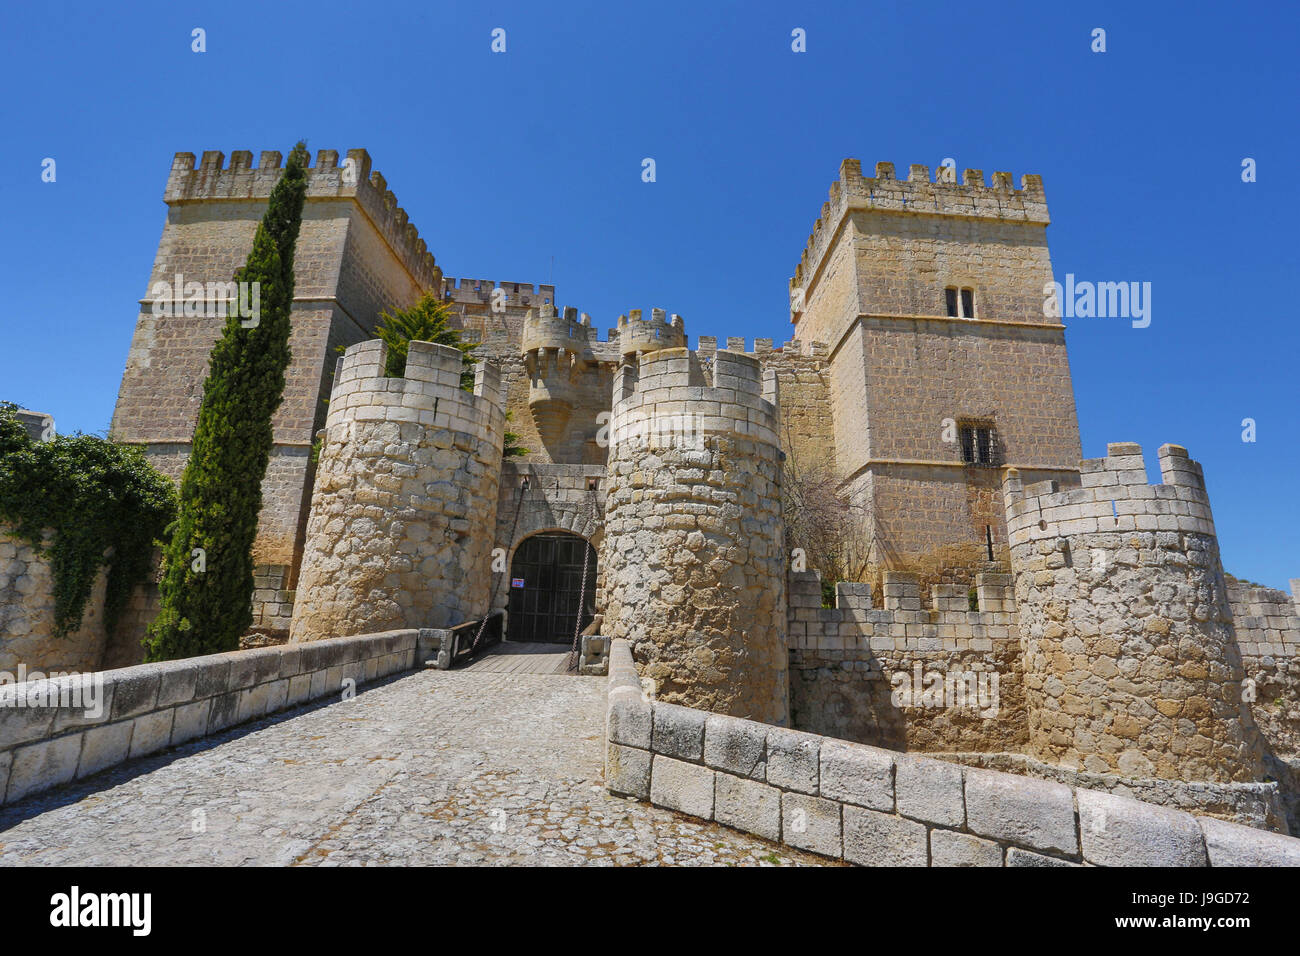 Spain, Castilla Leon Community, Palencia Province, Ampudia City, Ampudia Castle, Stock Photo